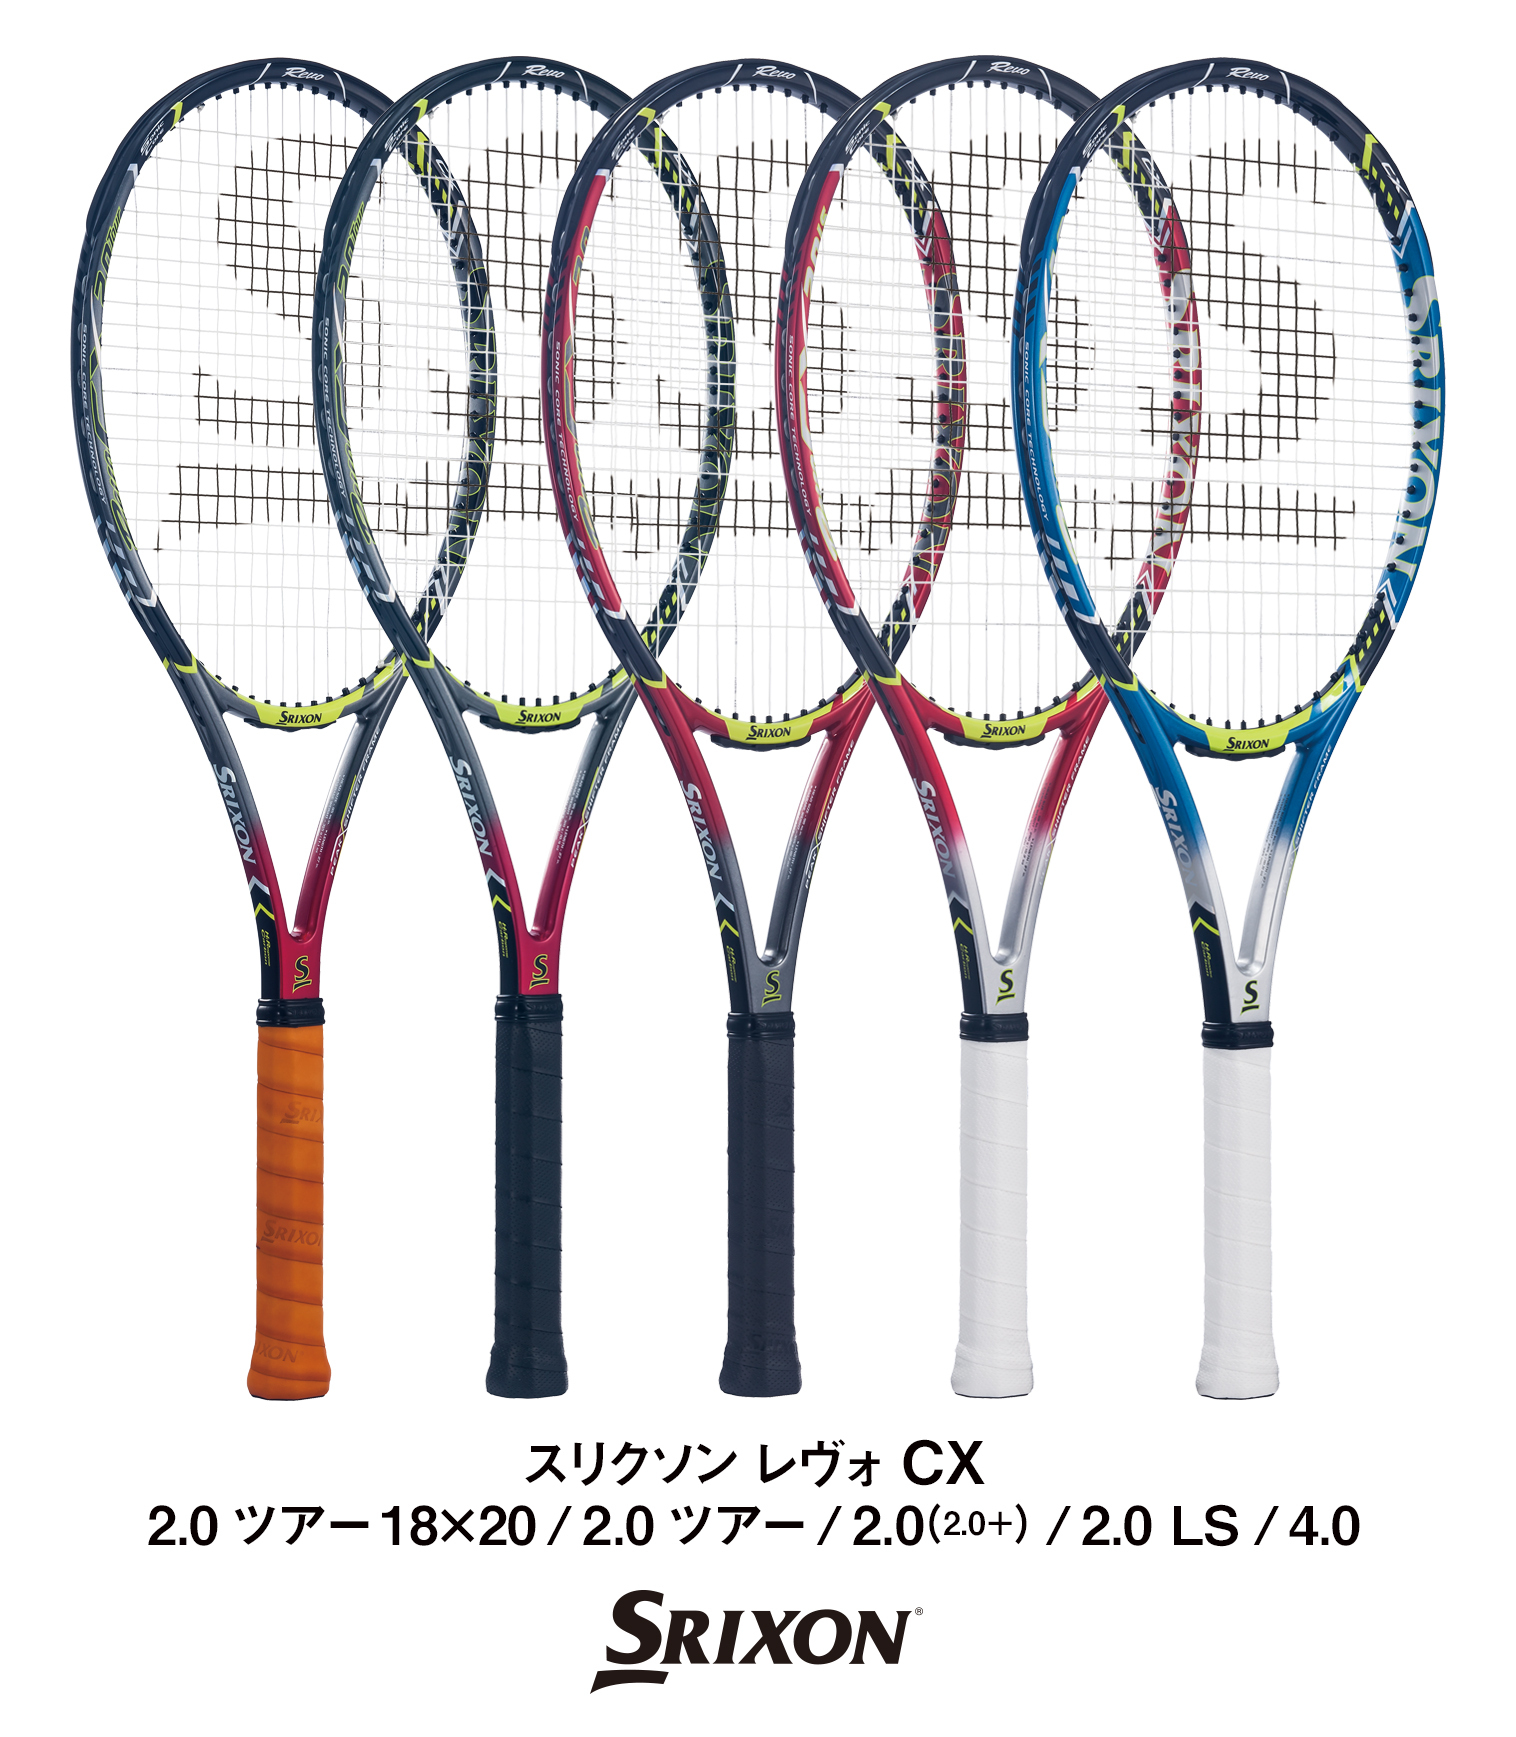 スリクソンテニスラケット「REVO(レヴォ) CX(シーエックス)」シリーズ5 